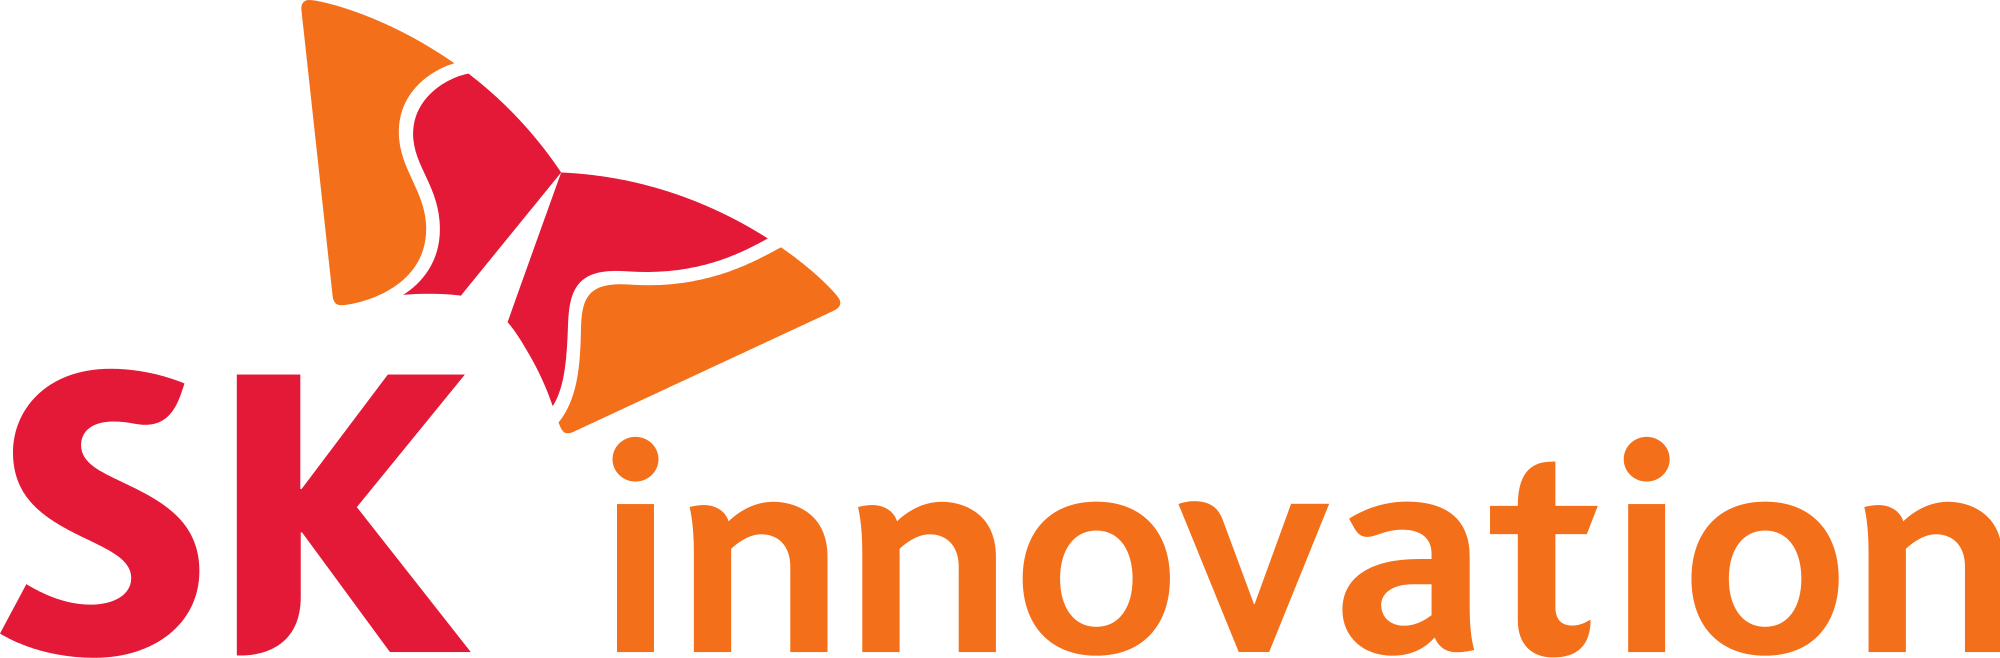 SK Innovation Brand Logo